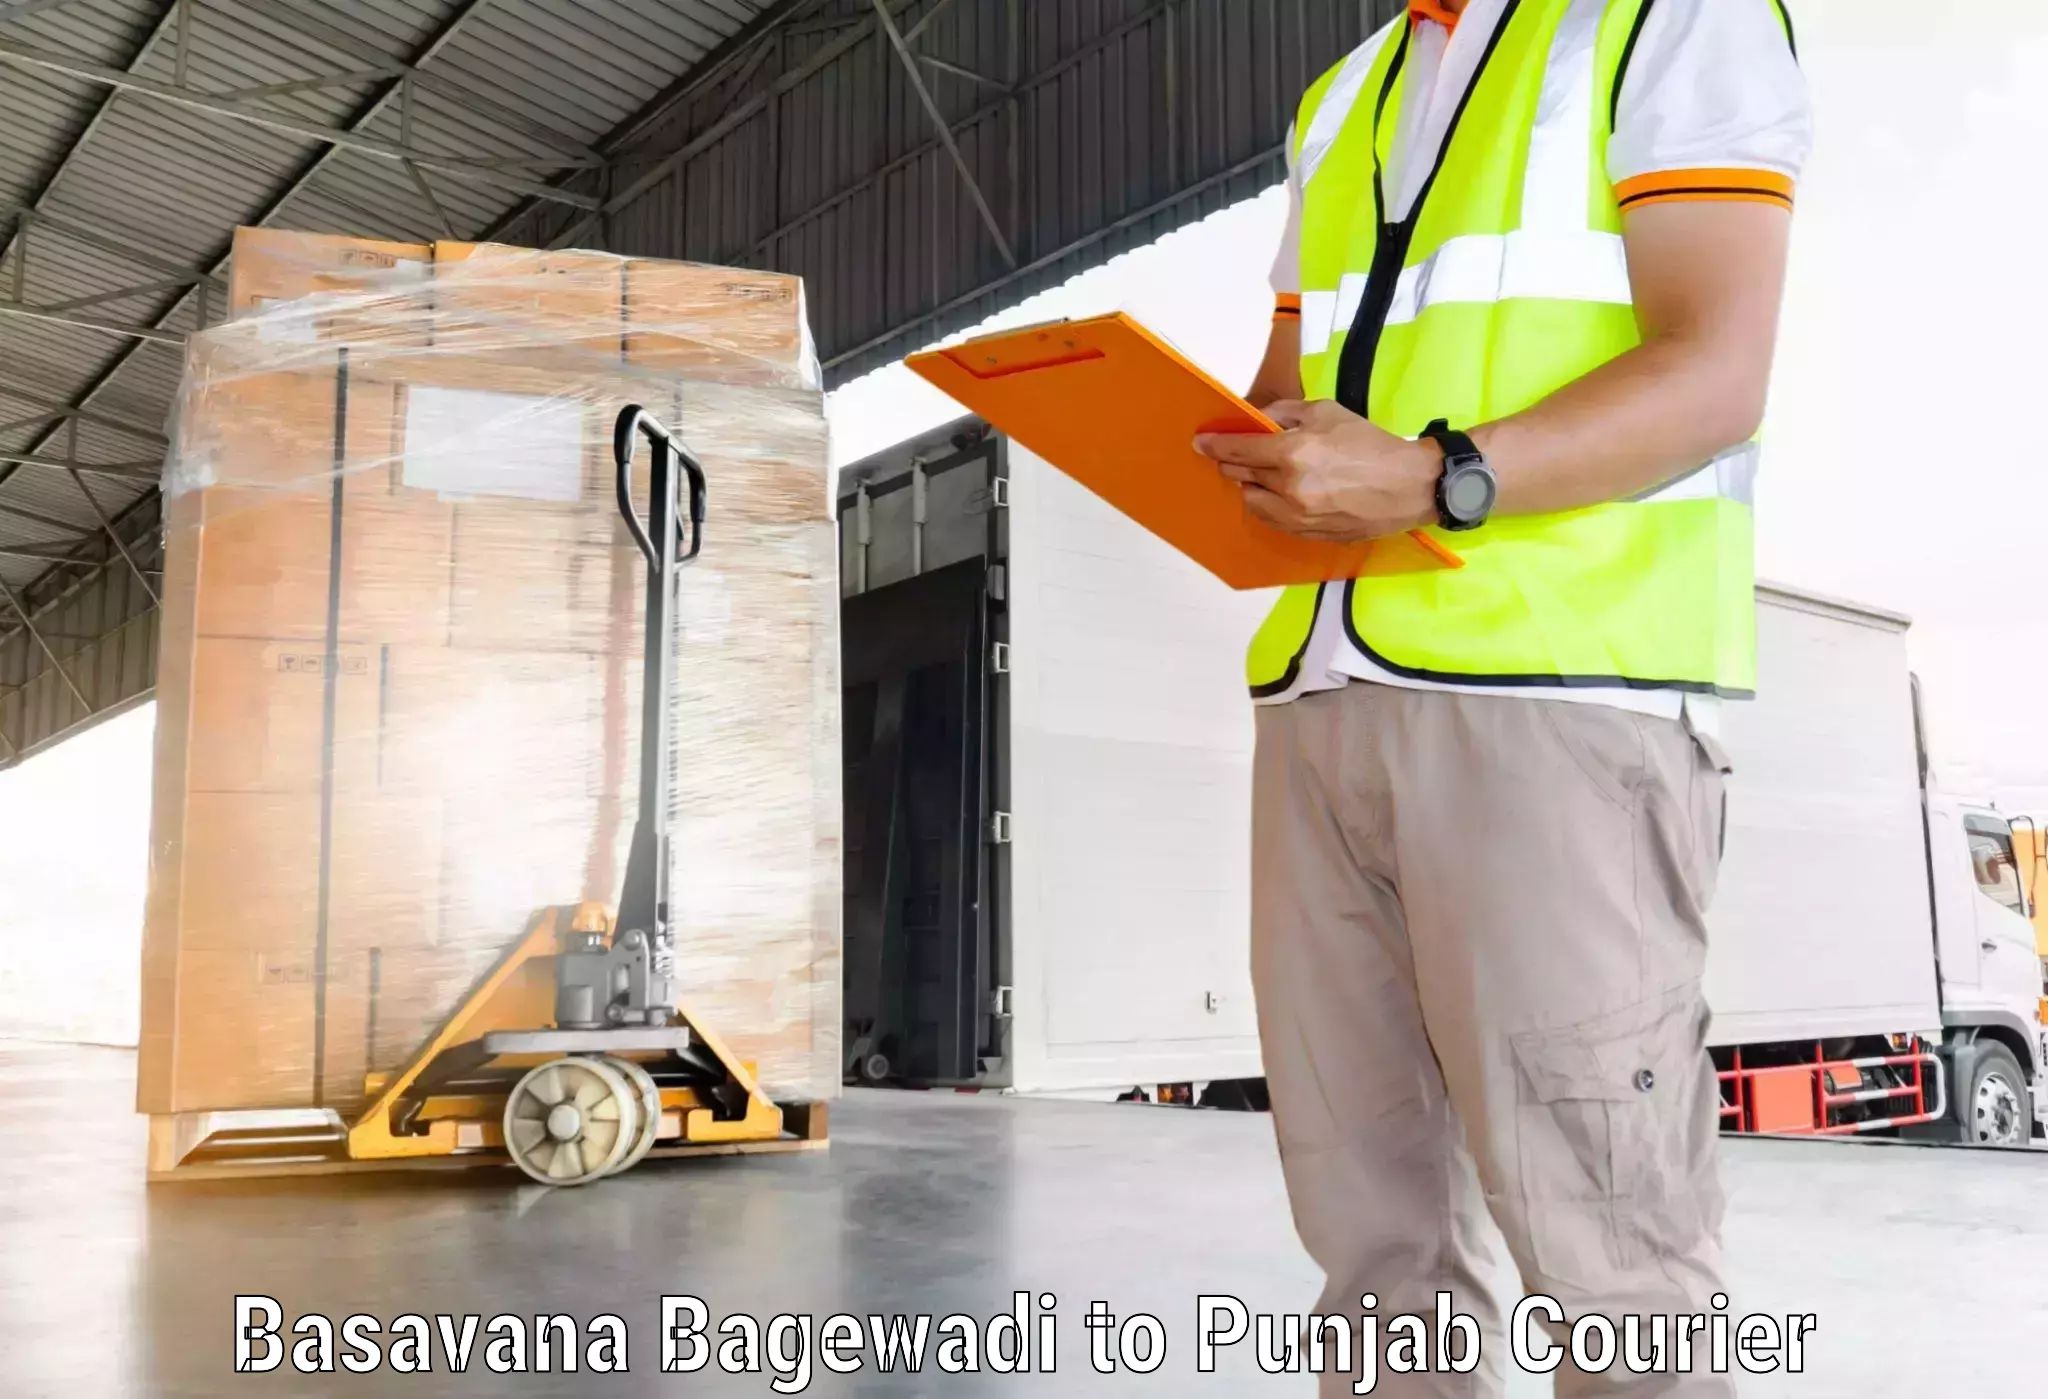 Global parcel delivery Basavana Bagewadi to Mansa